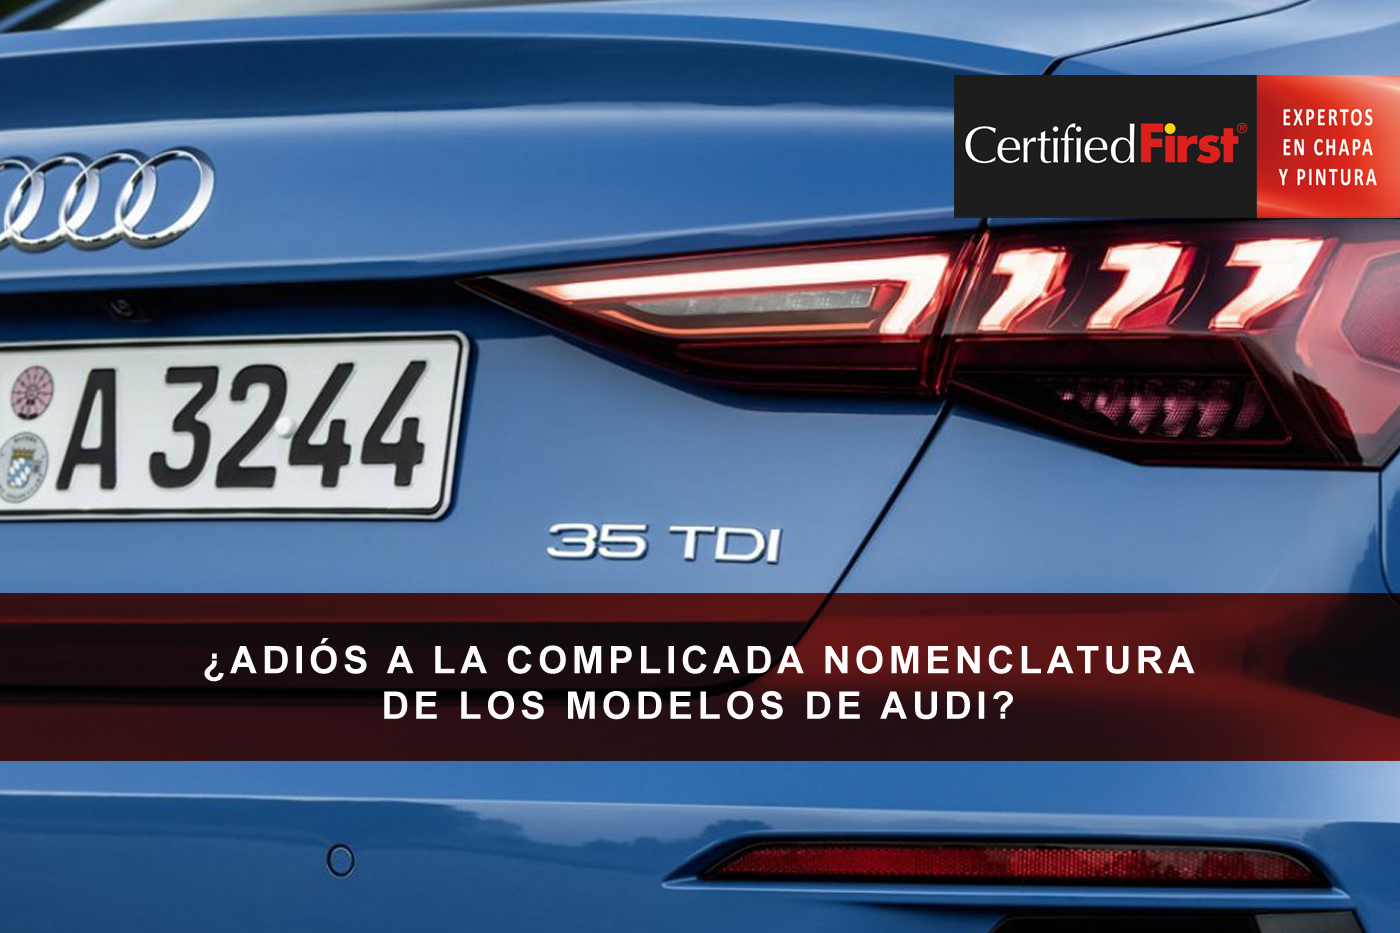 ¿Adiós a la complicada nomenclatura de los modelos de Audi?